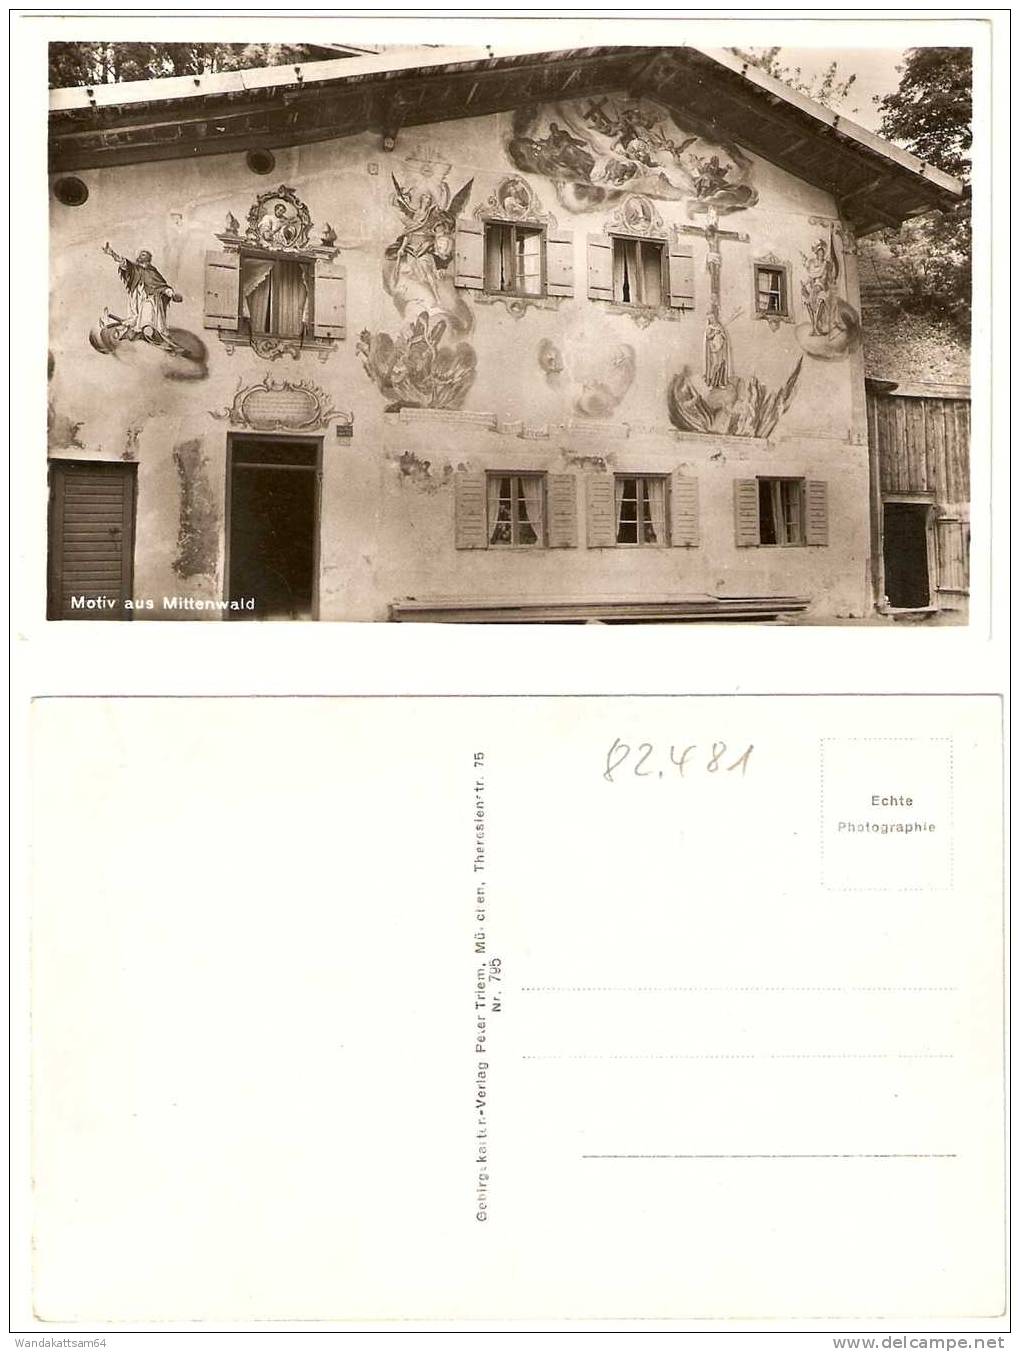 AK Motiv Aus Mittenwald (Schlipferhaus Von 1783) Nr. 795 Gebirgskarten-Verlag Peter Triem, München Echte Photographie - Mittenwald